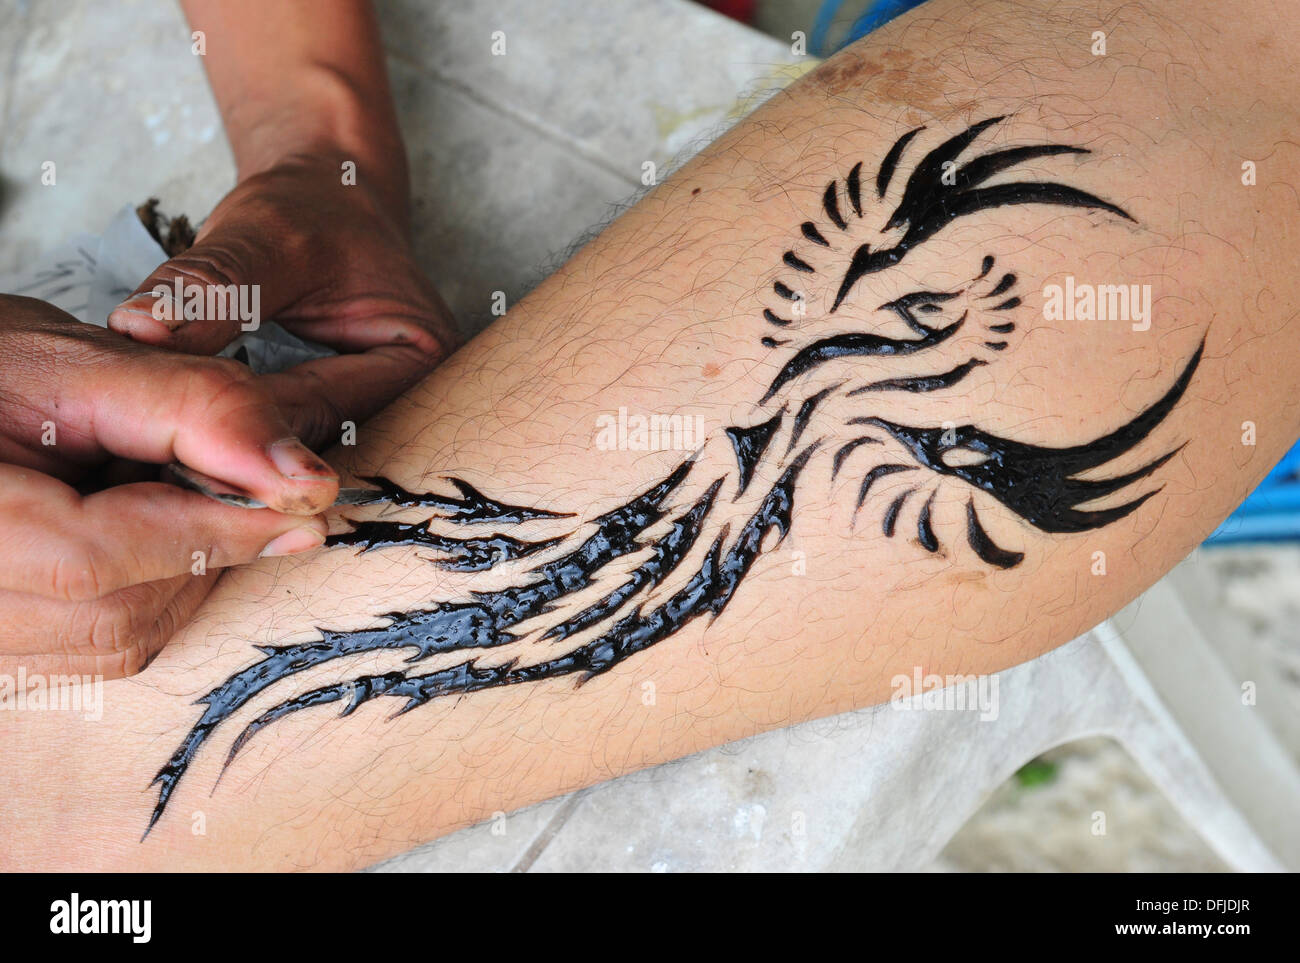 Tatouage au henné sur Sai Kaew beach (Koh Samet, Thaïlande) Banque D'Images